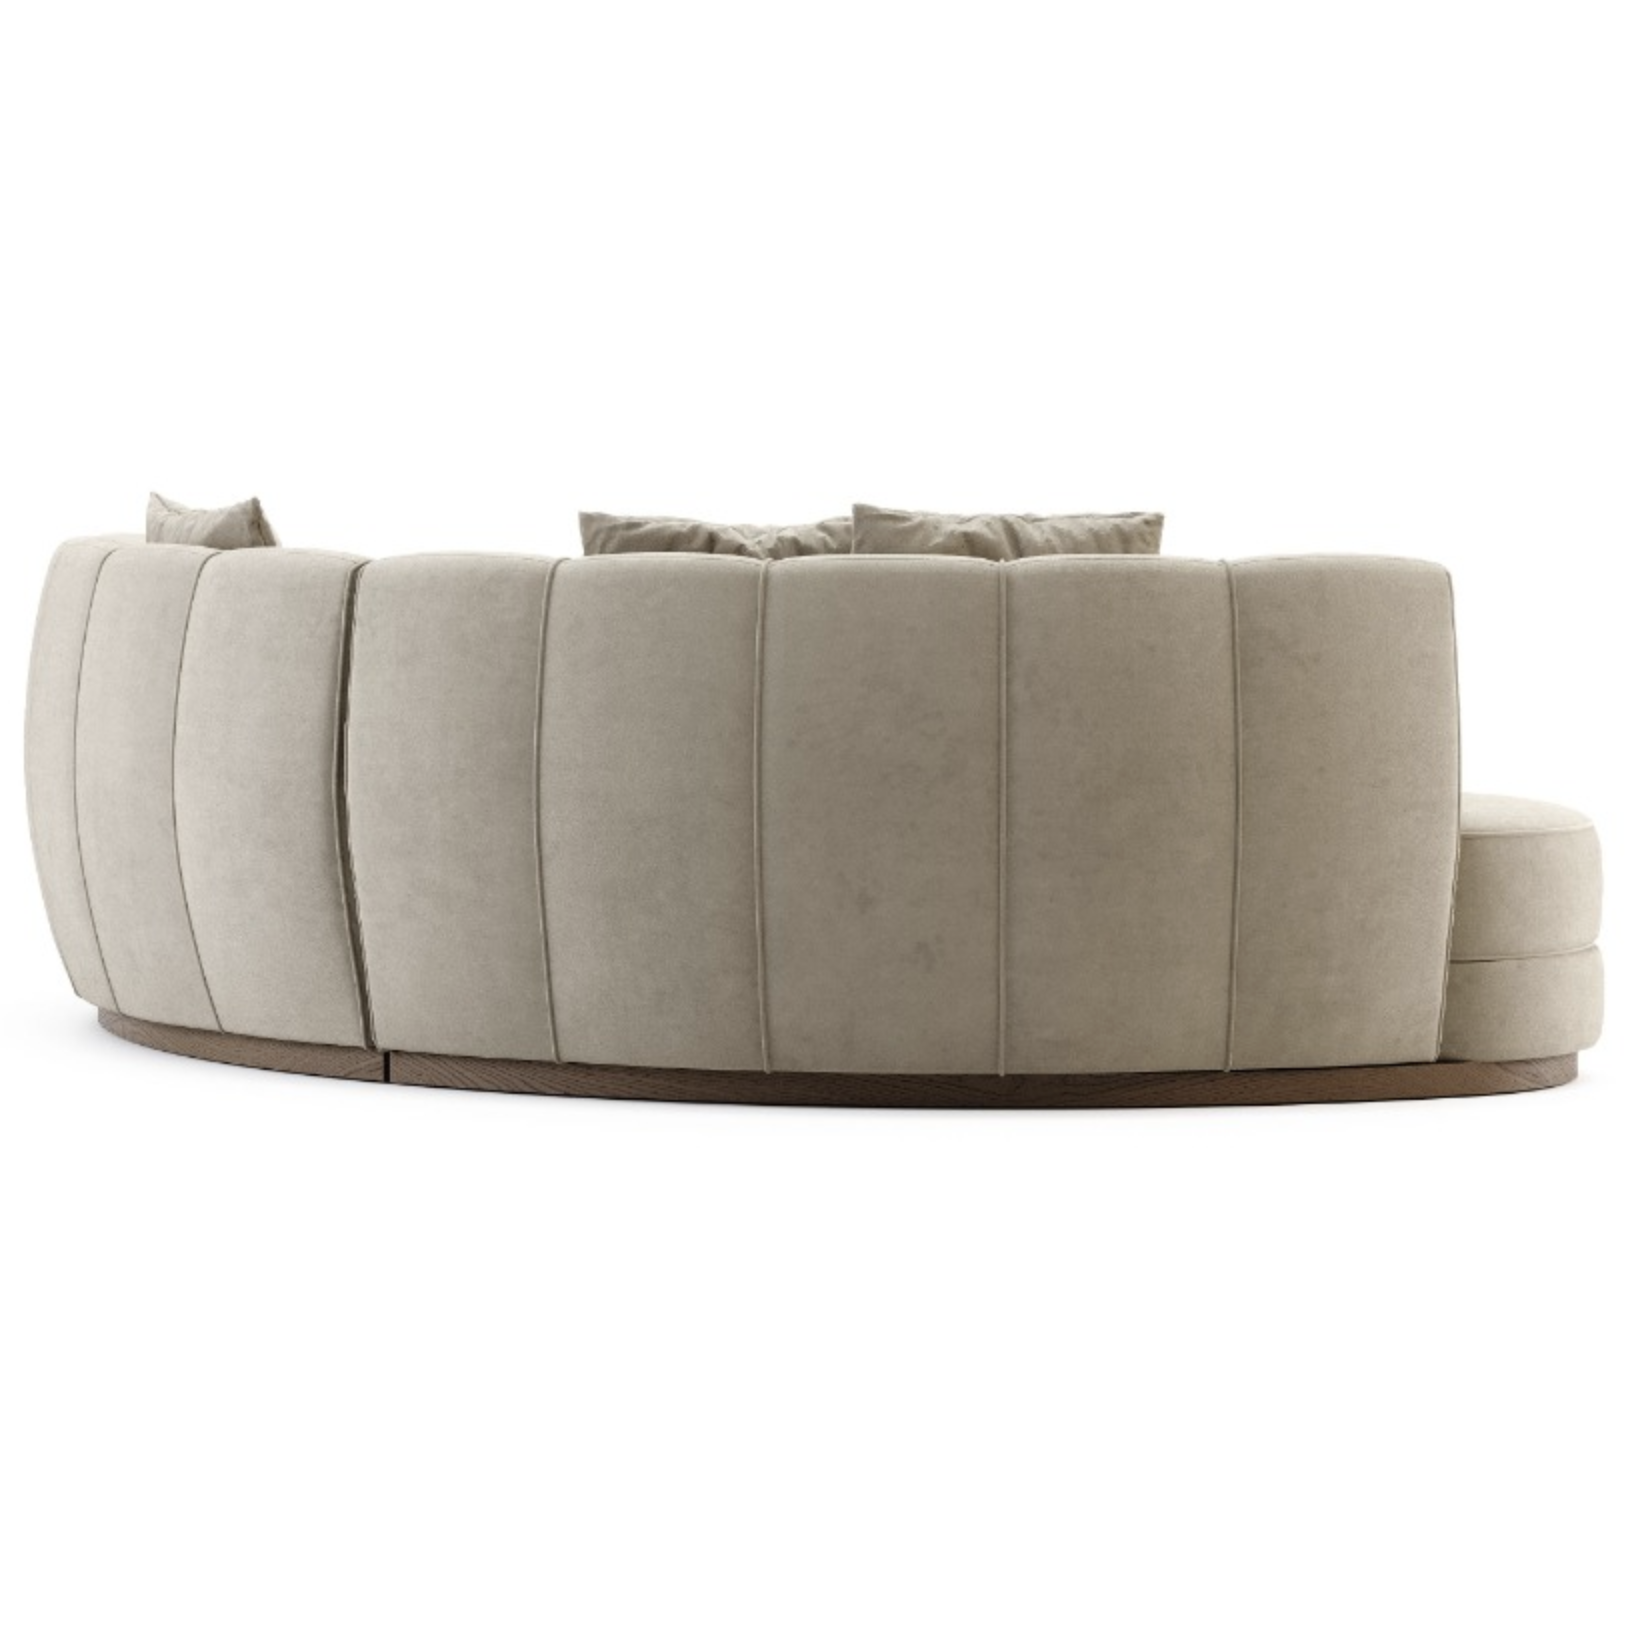 Domkapa Stella Sofa - Customisable | Modern Furniture + Decor